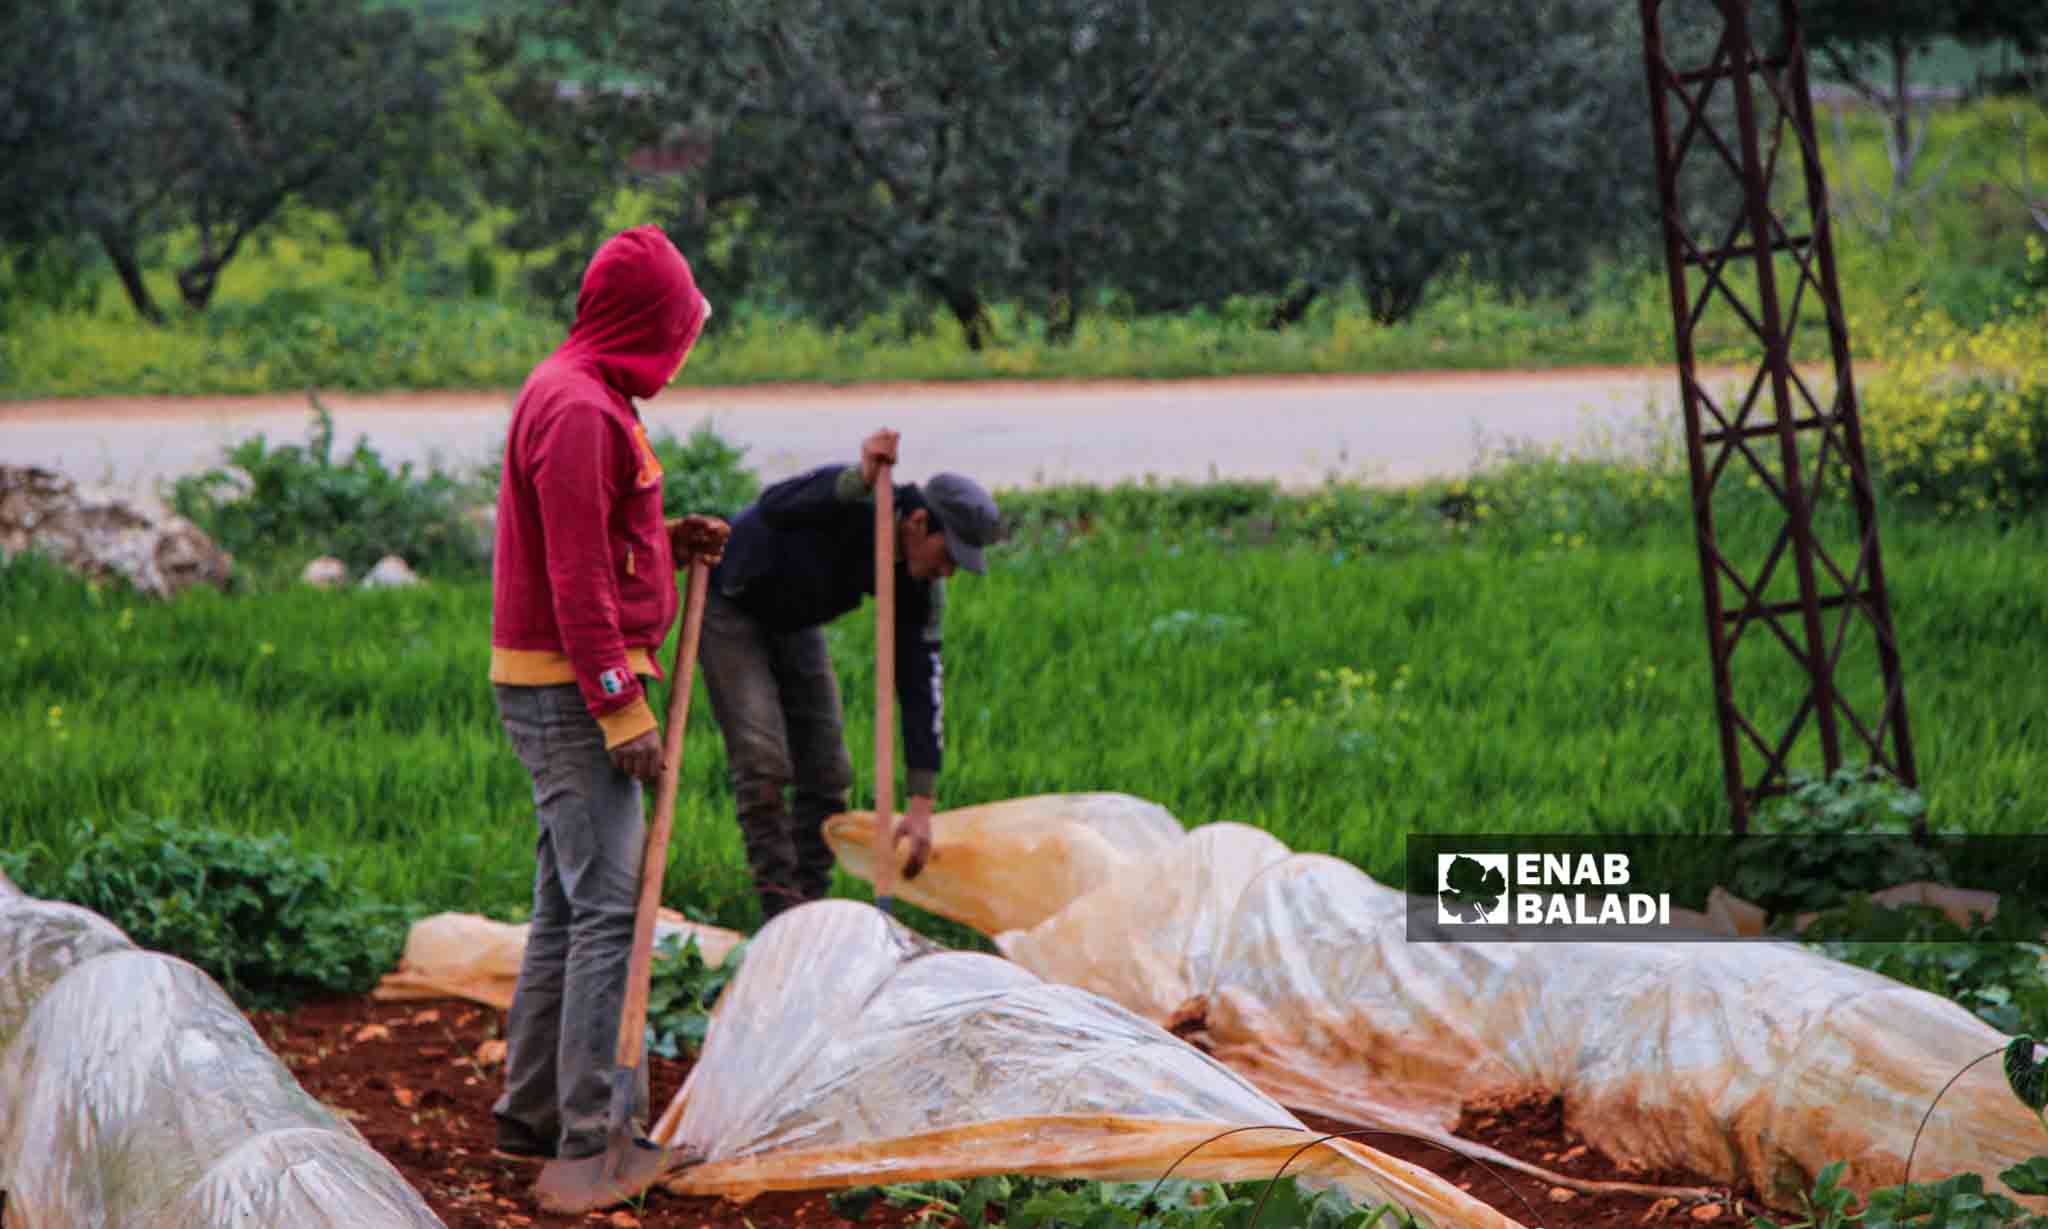  مزارعون يصلحون الأنفاق الزراعية البلاستيكية التي تضررت بسبب الرياح في قرية مورين بريف إدلب - 30 من آذار 2023 (إياد عبد الجواد/عنب بلدي)